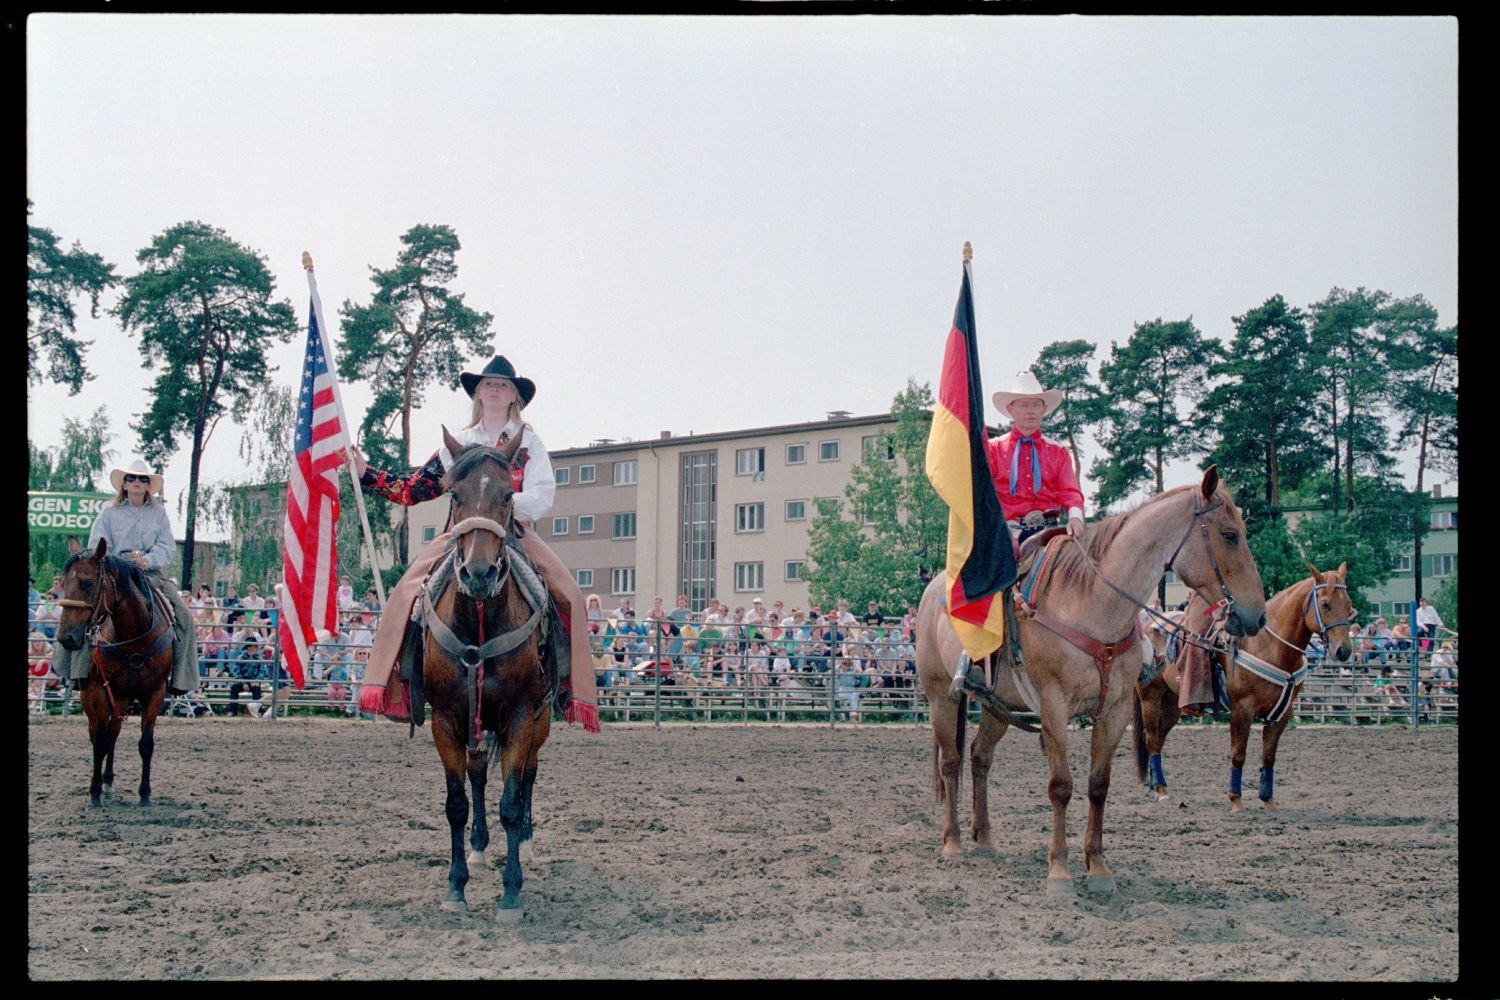 Fotografie: Rodeo Mania 1993 auf dem Festplatz Deutsch-Amerikanisches Volksfest in Berlin-Dahlem